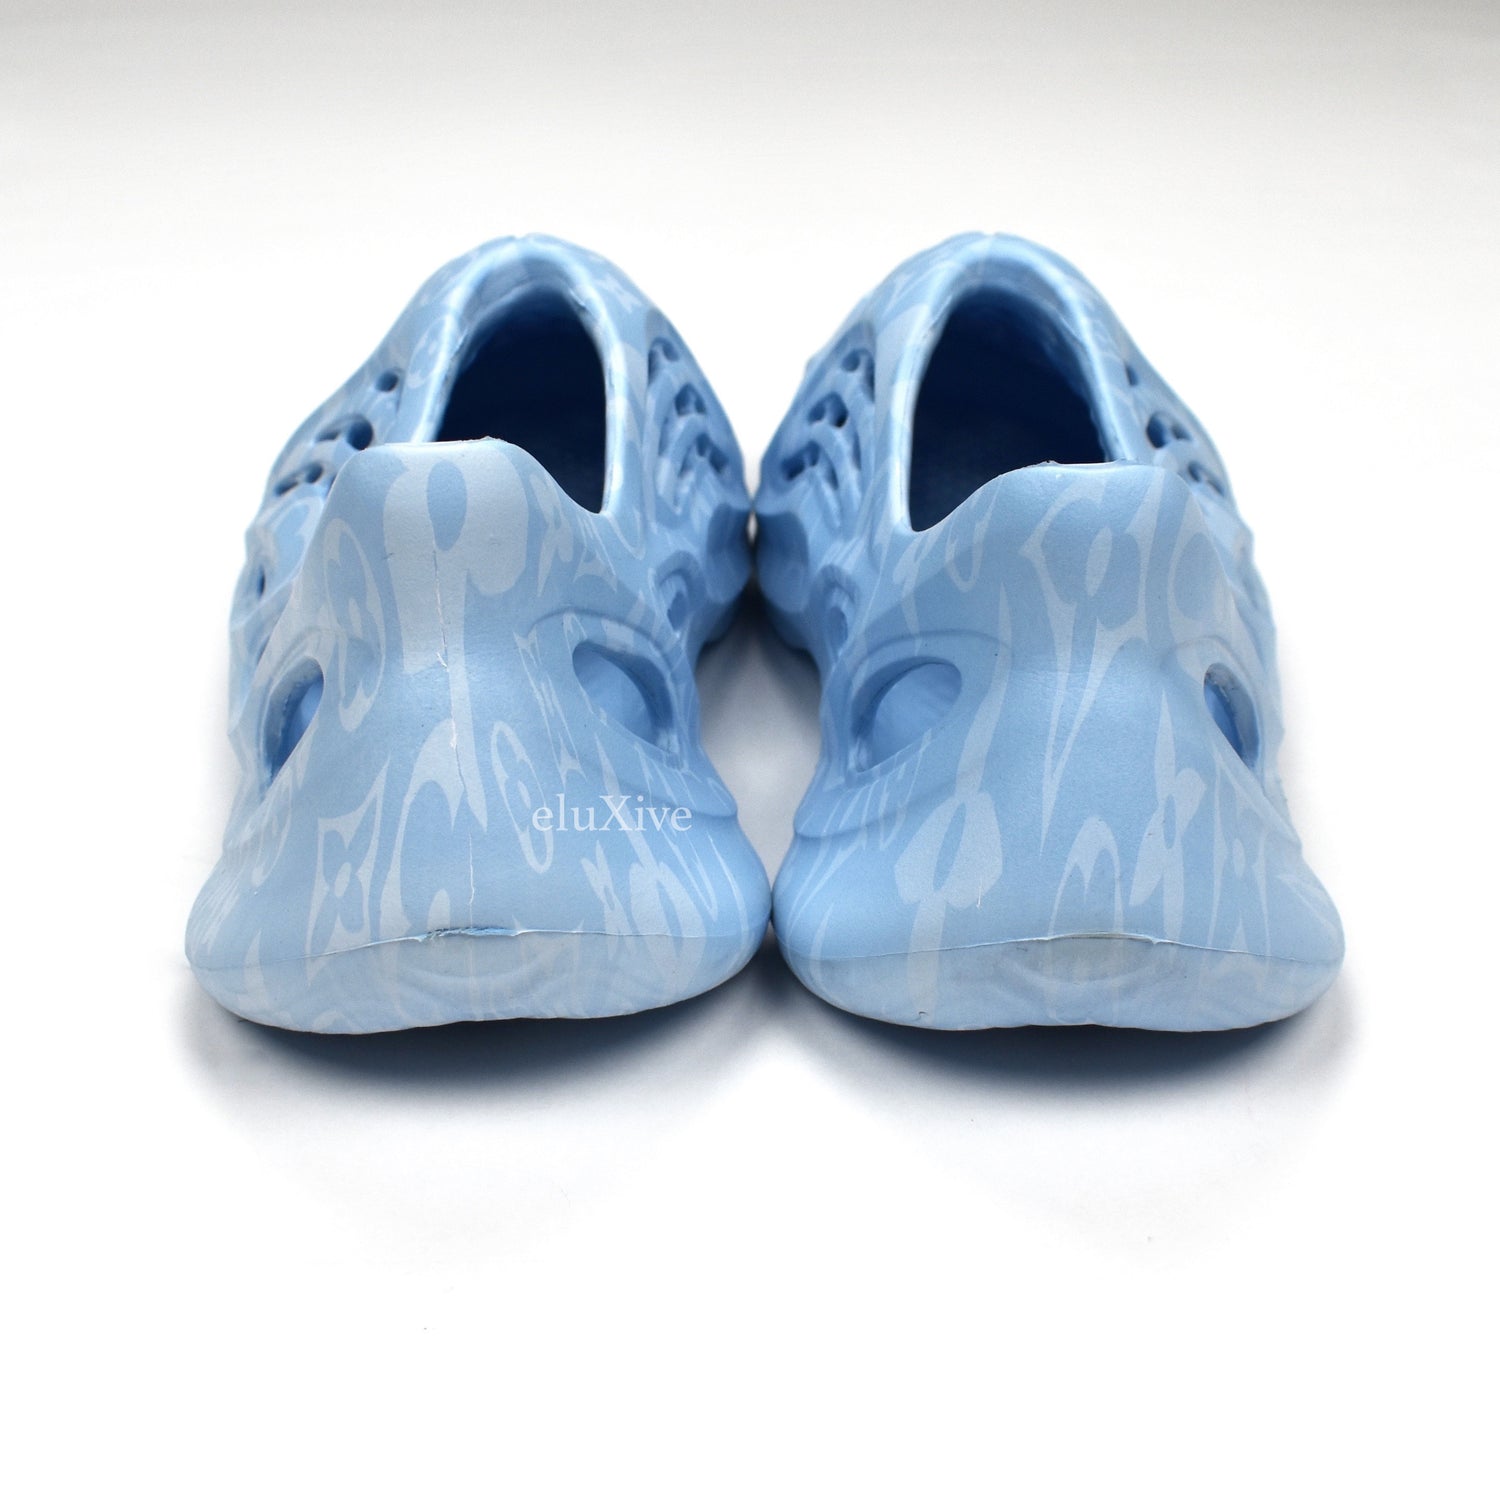 Strap up - Louis Vuitton Yeezy Foam Runner 💰